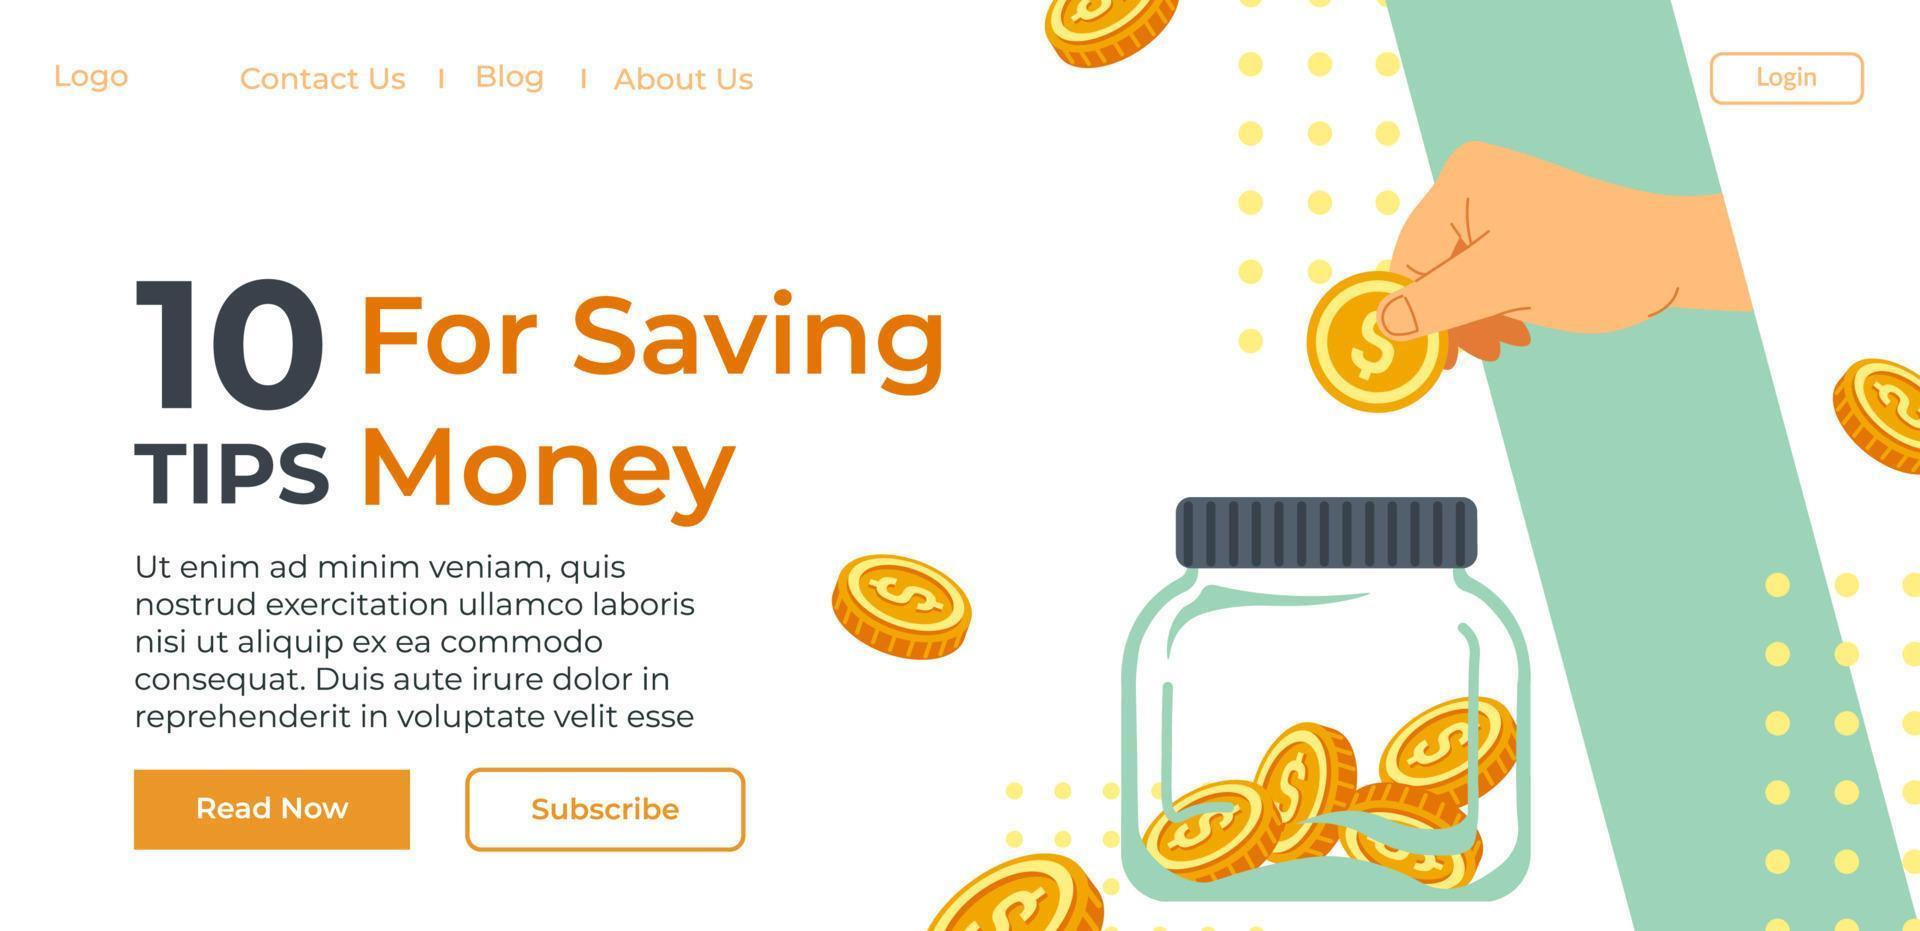 dix conseils pour économiser de l'argent, informations sur le site Web vecteur